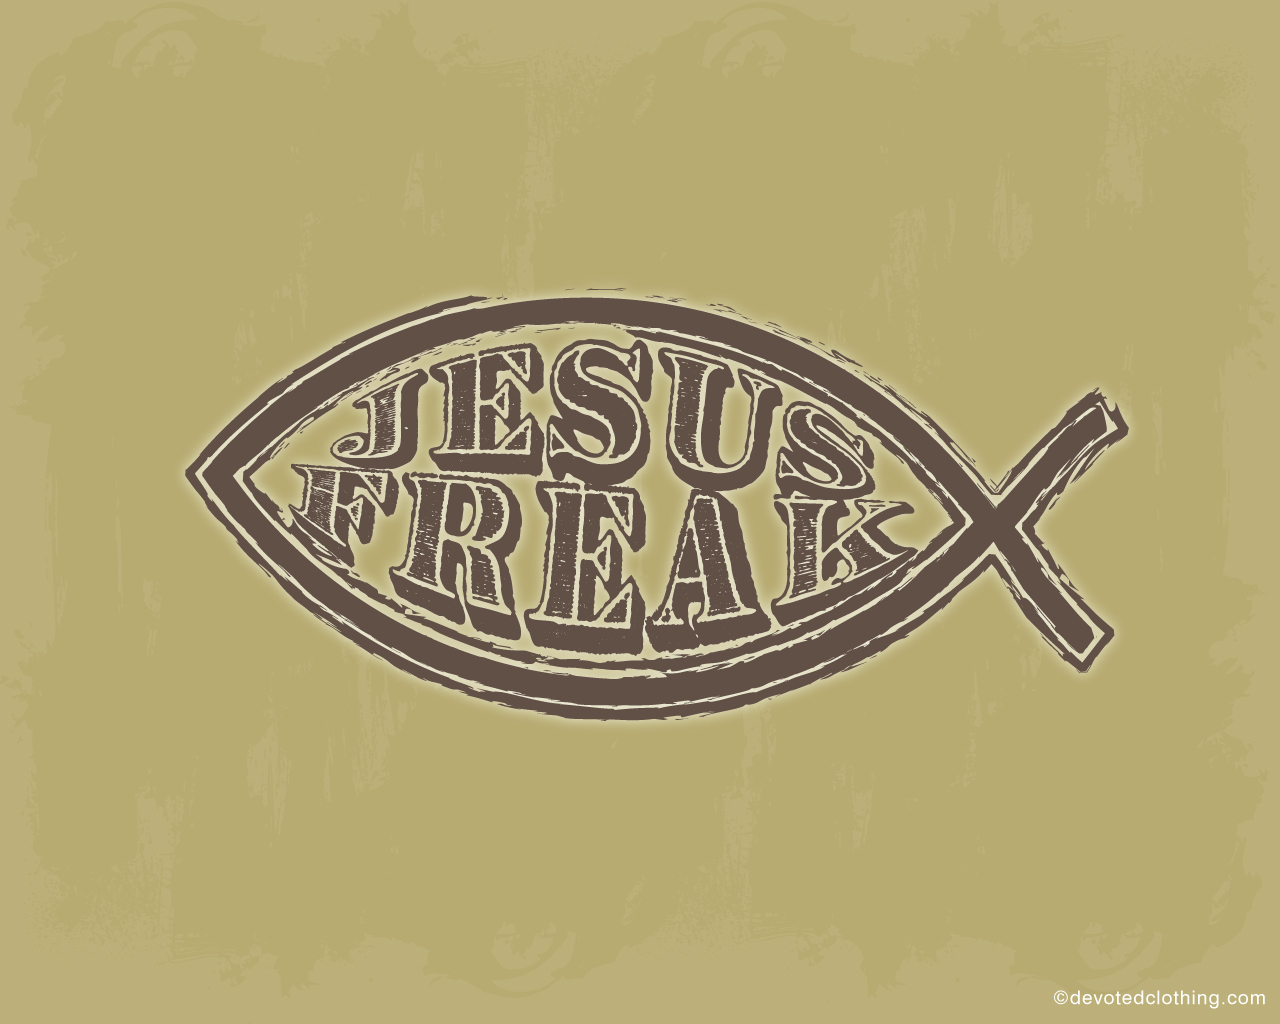 Jesus Freak - HD Wallpaper 